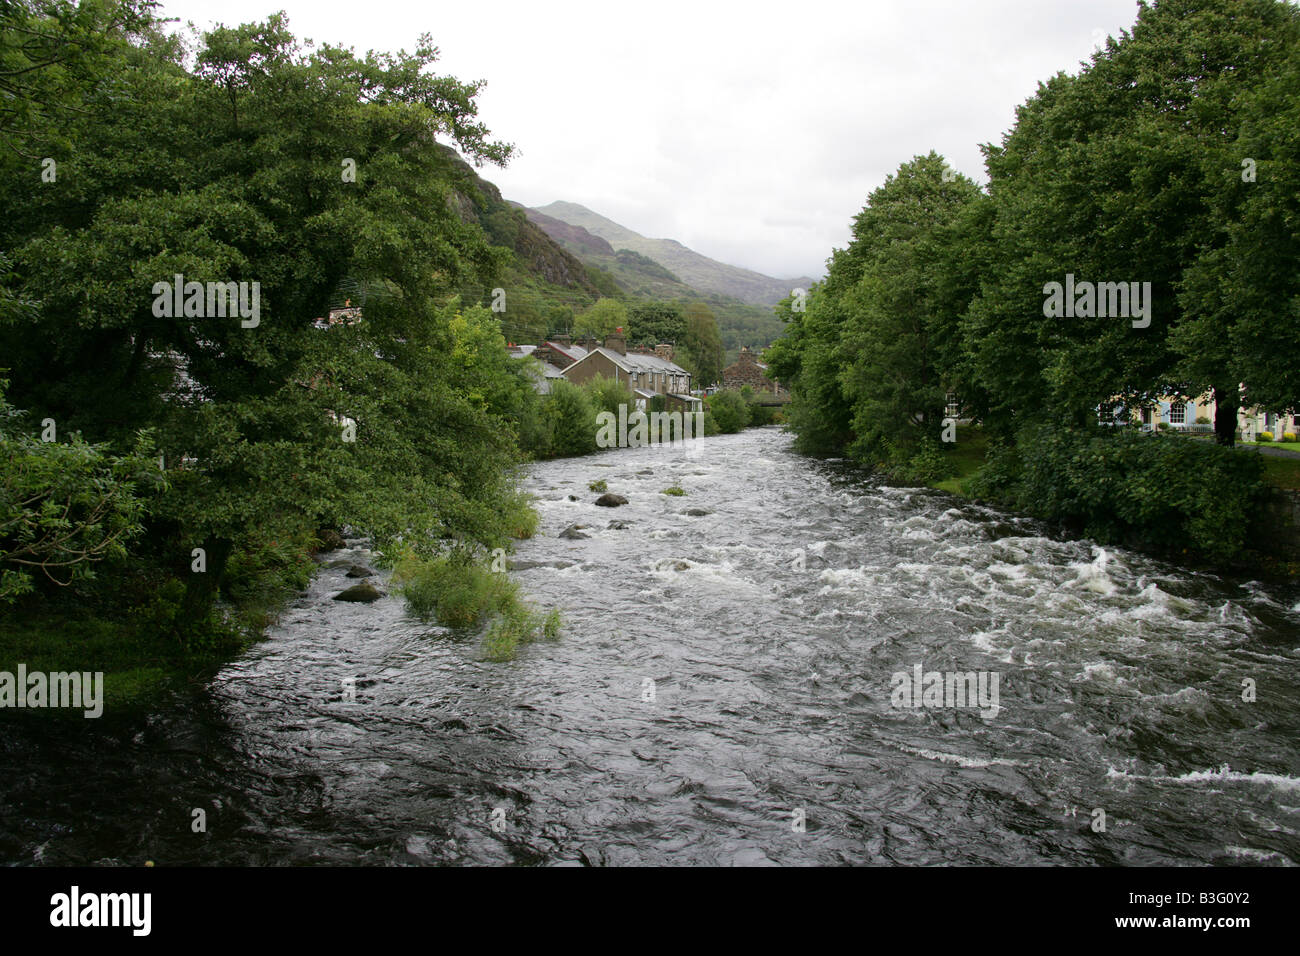 The Colwyn River at Beddgelert, Gwynedd, North Wales Stock Photo